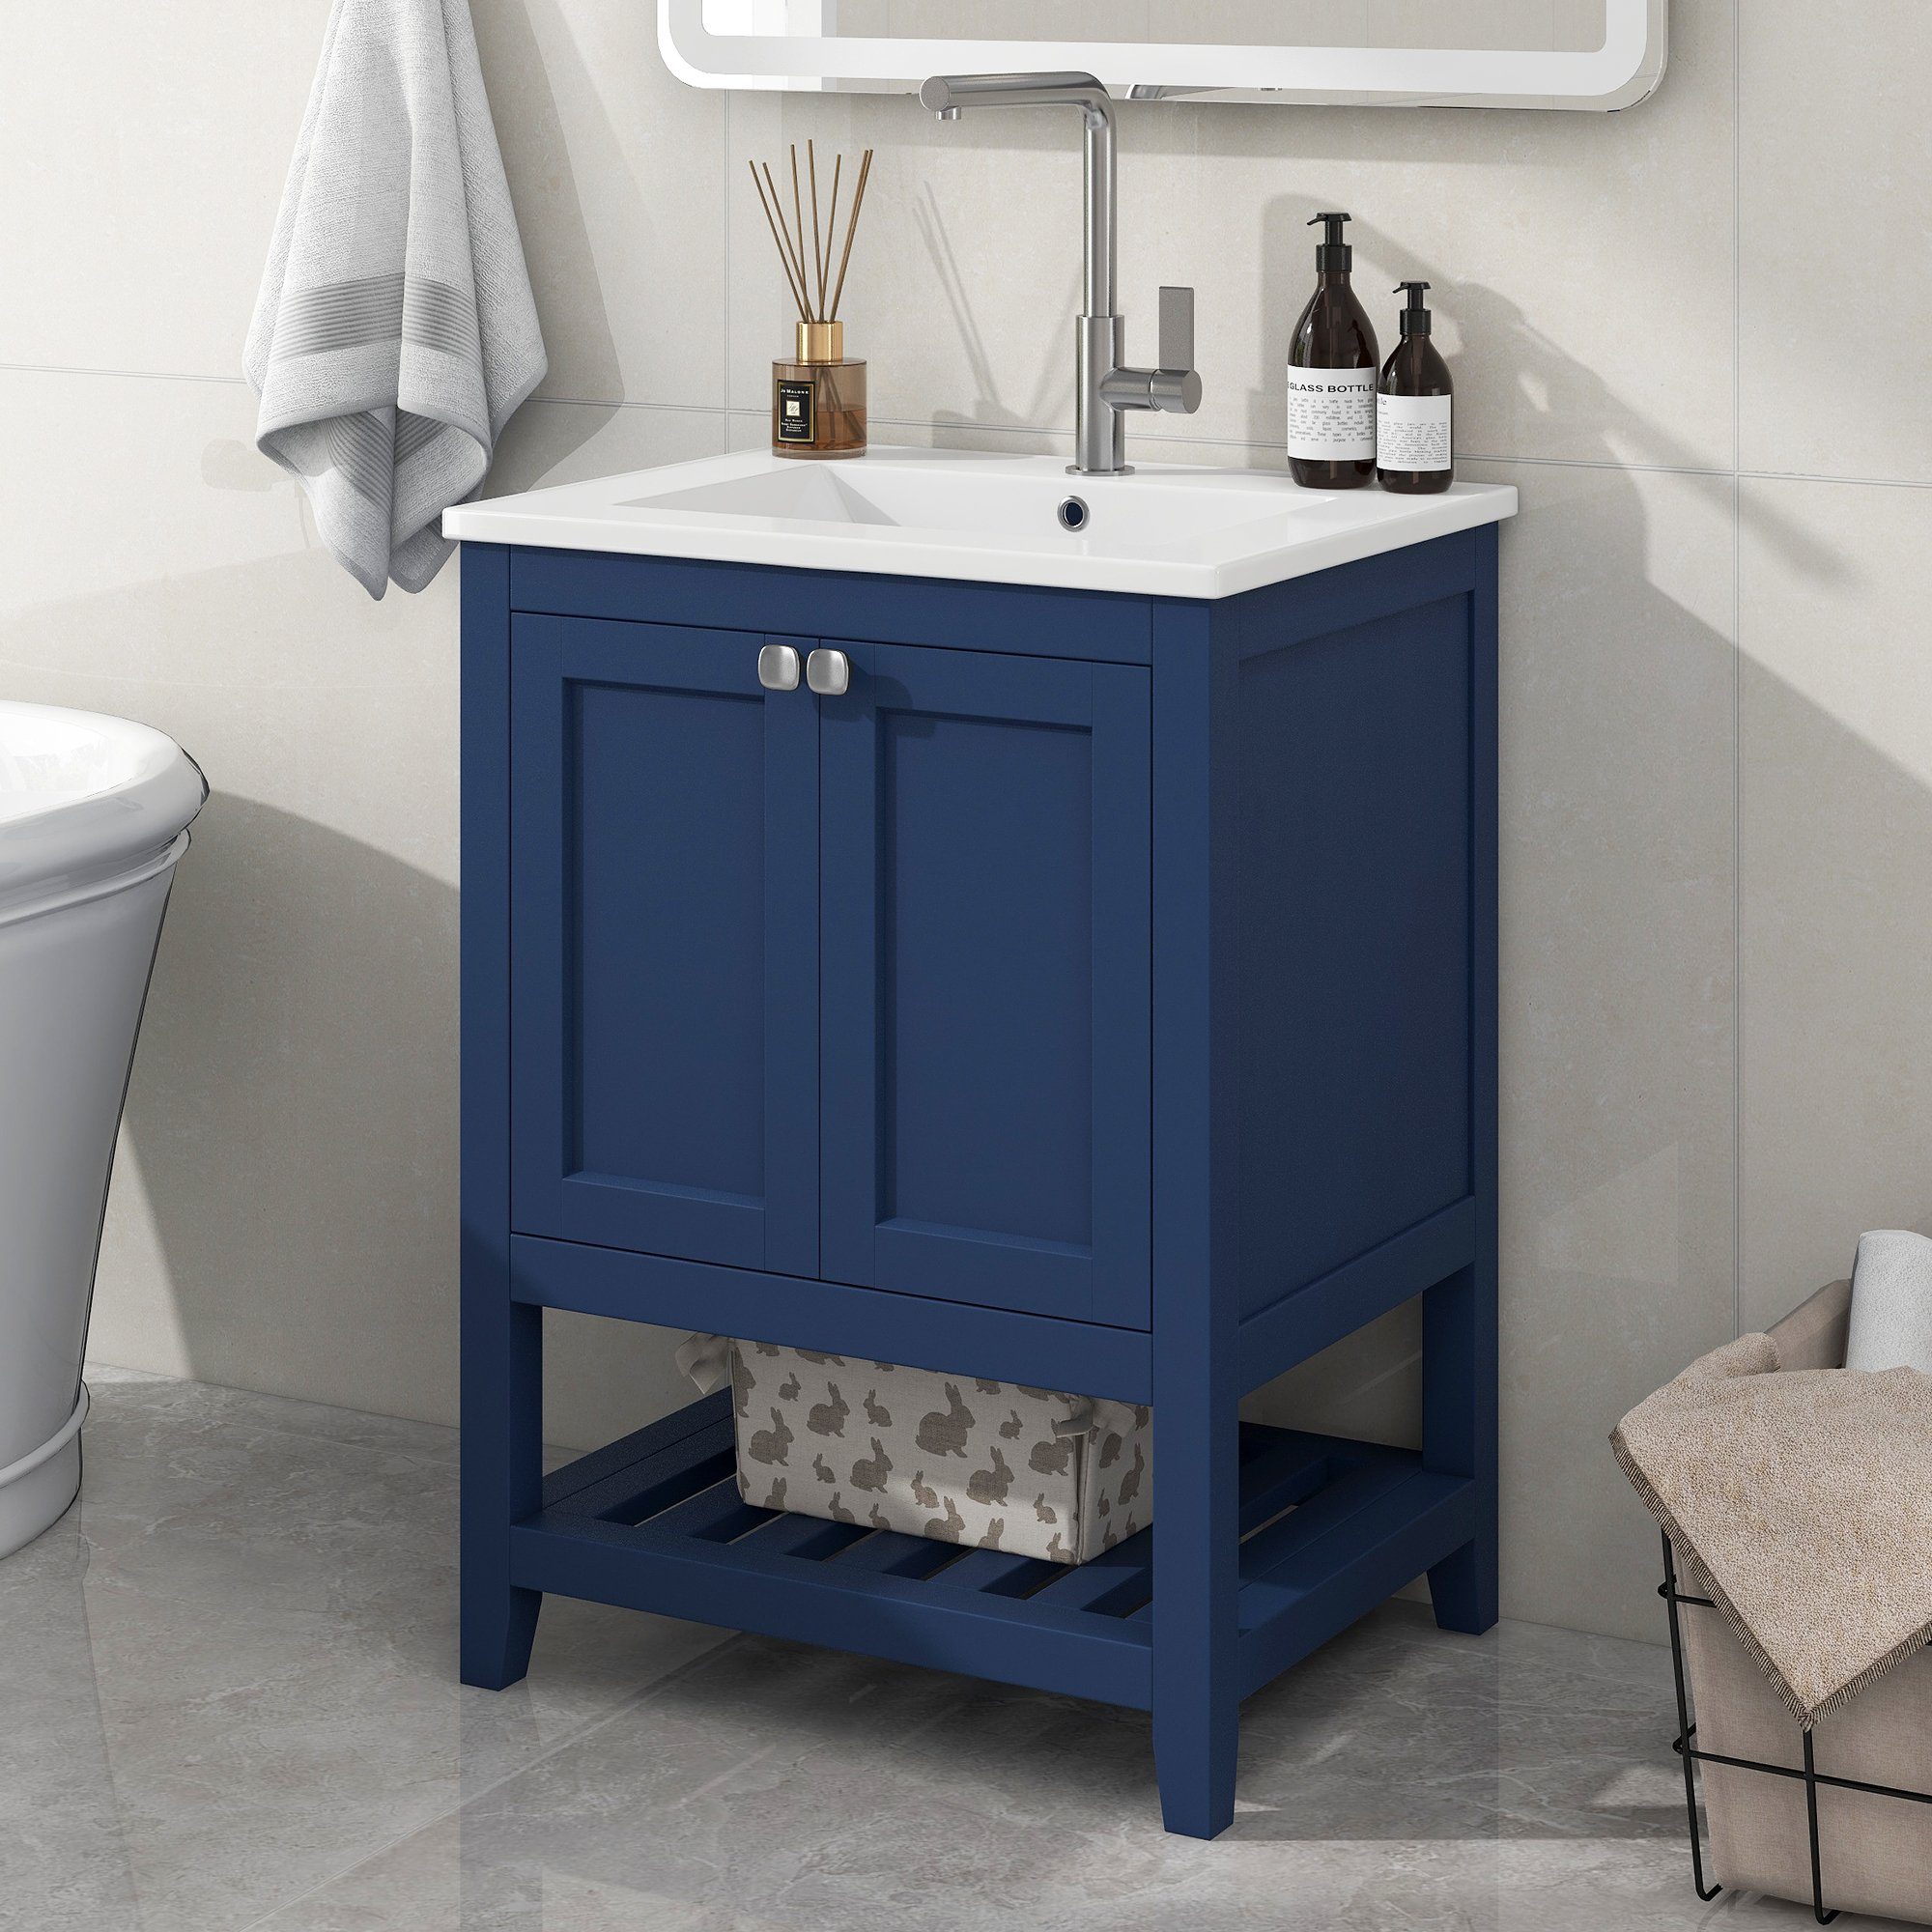 HAUSS SPLOE Waschtisch Einzel Waschtisch mit Unterschrank 60cm mit Keramik-Waschbecken,Blau